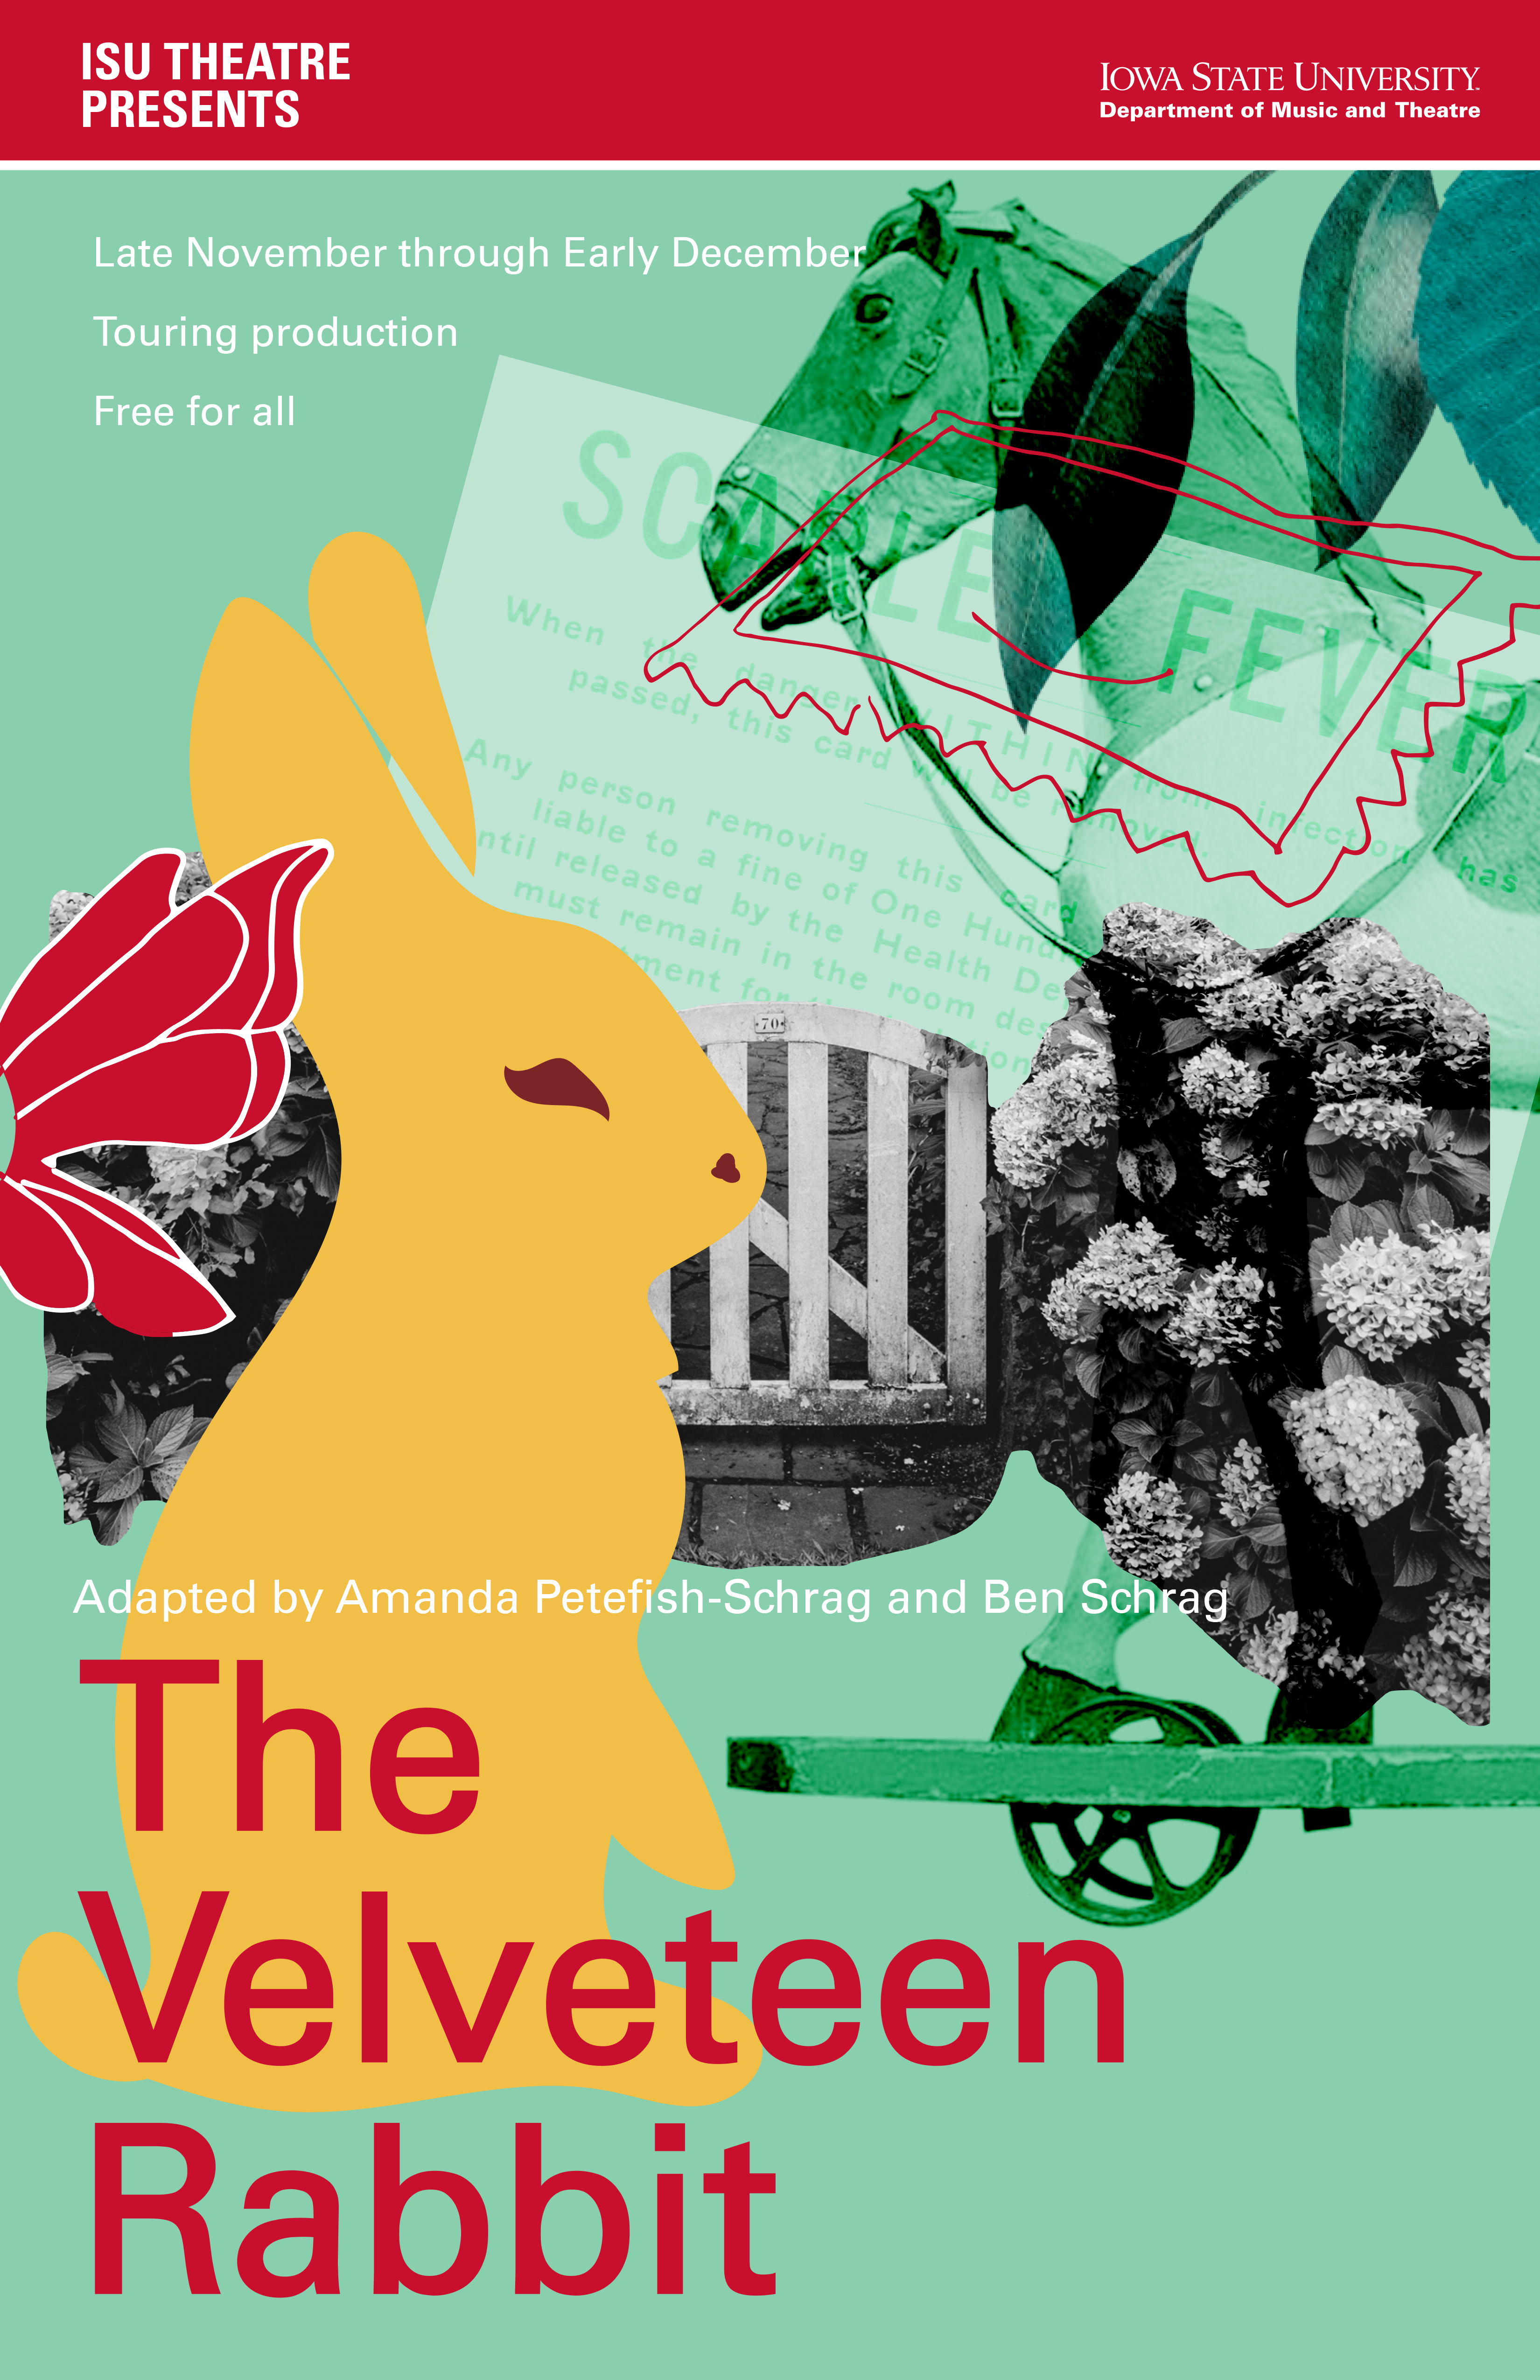 ISU Theatre Presents The Velveteen Rabbit